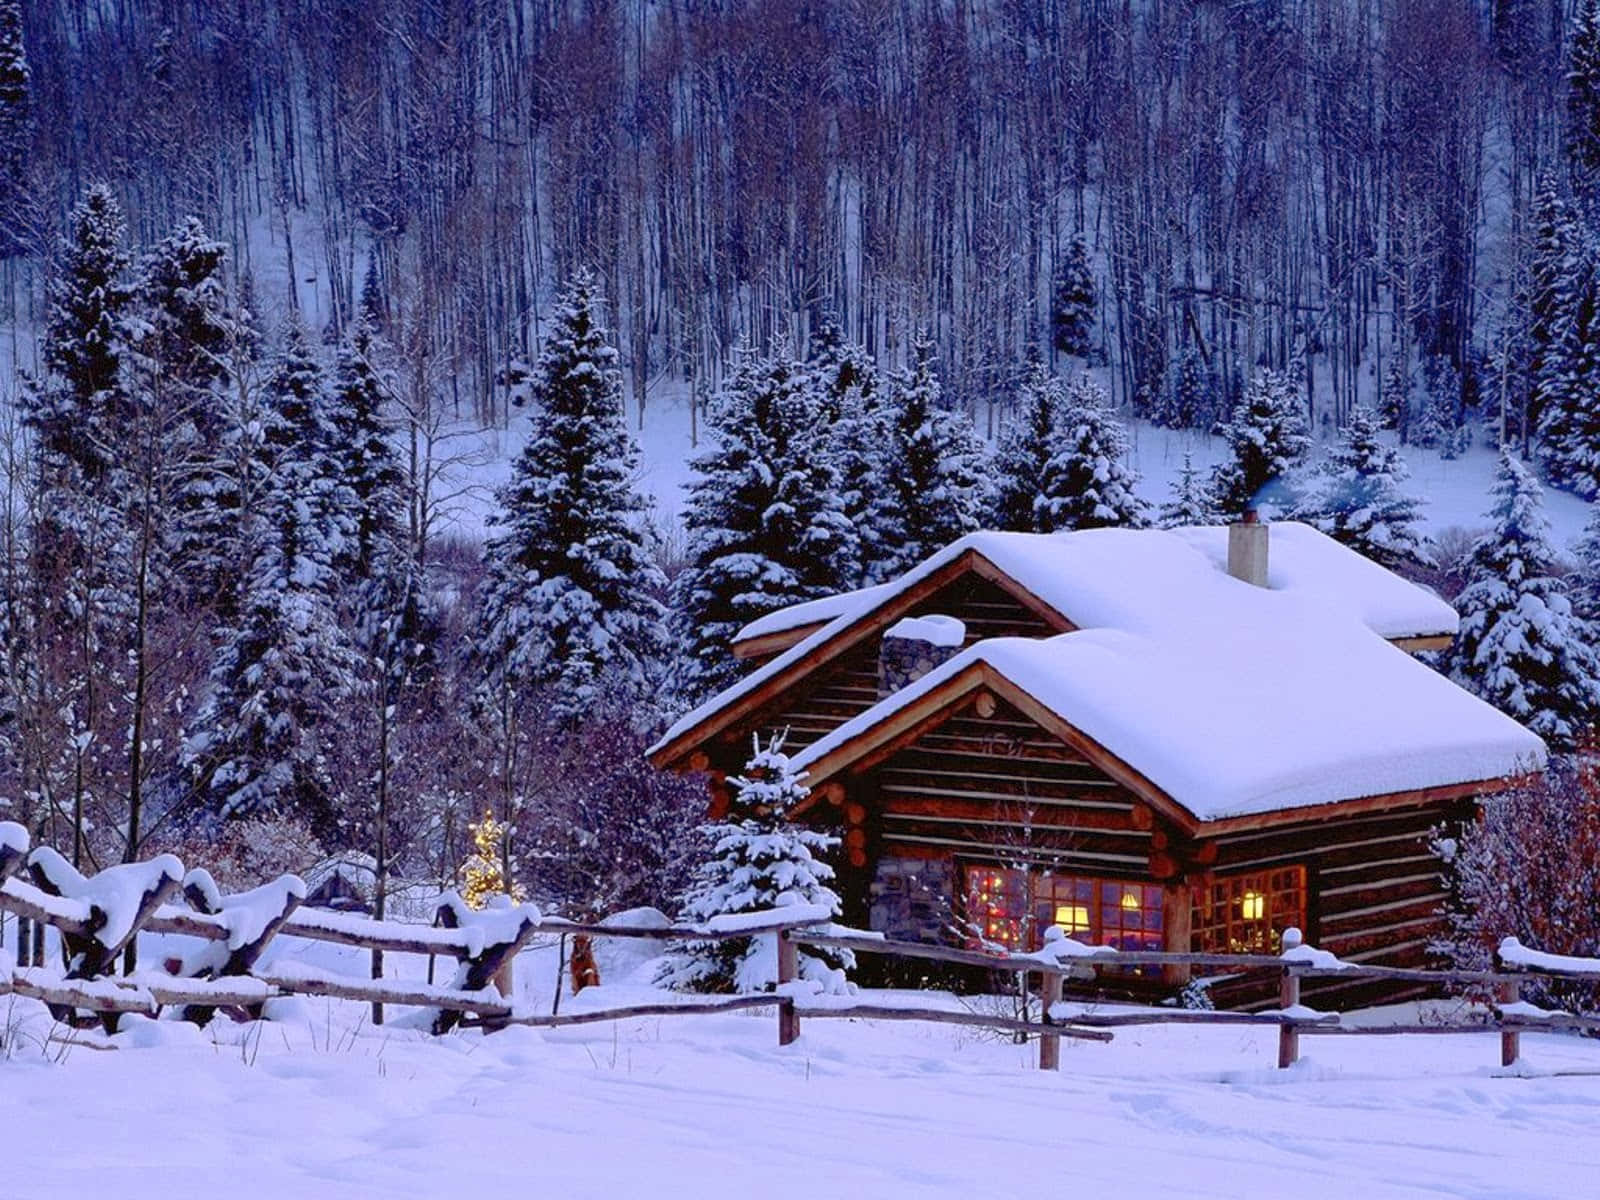 Snowy Winter Wonderland